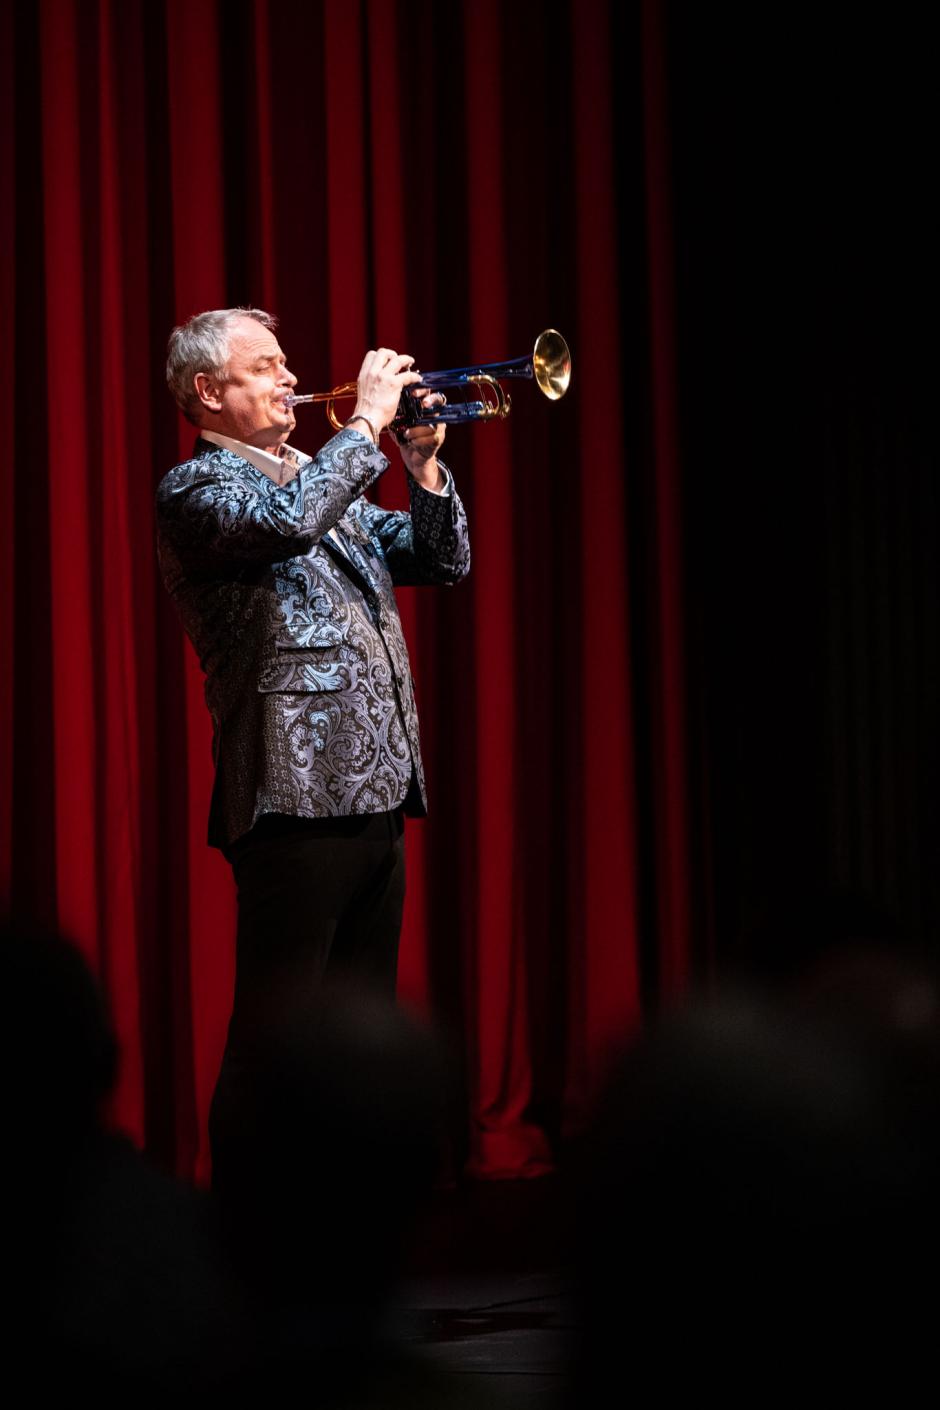 Jens Lindeman Plays Trumpet